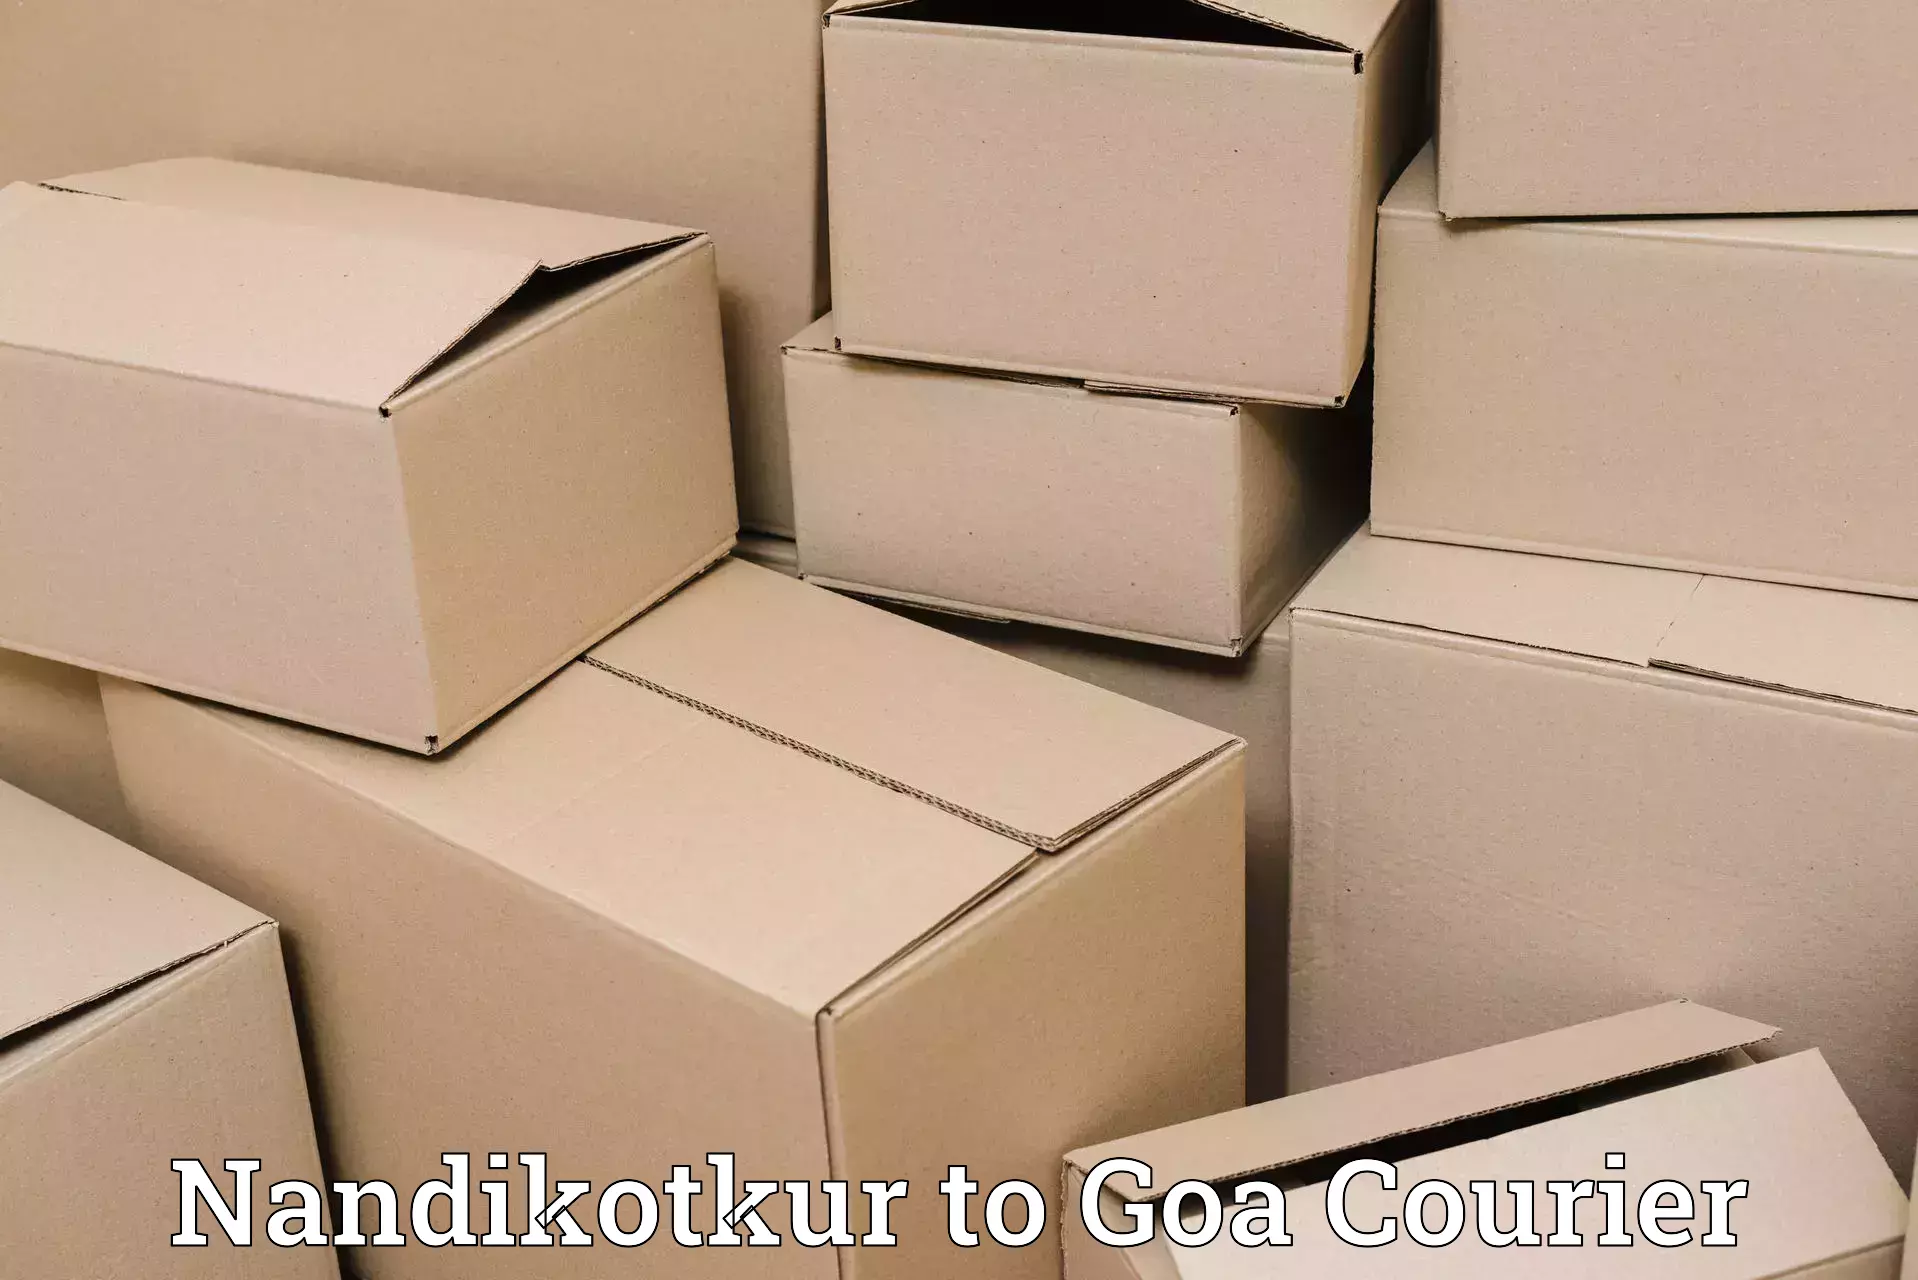 Customized shipping options Nandikotkur to Panaji